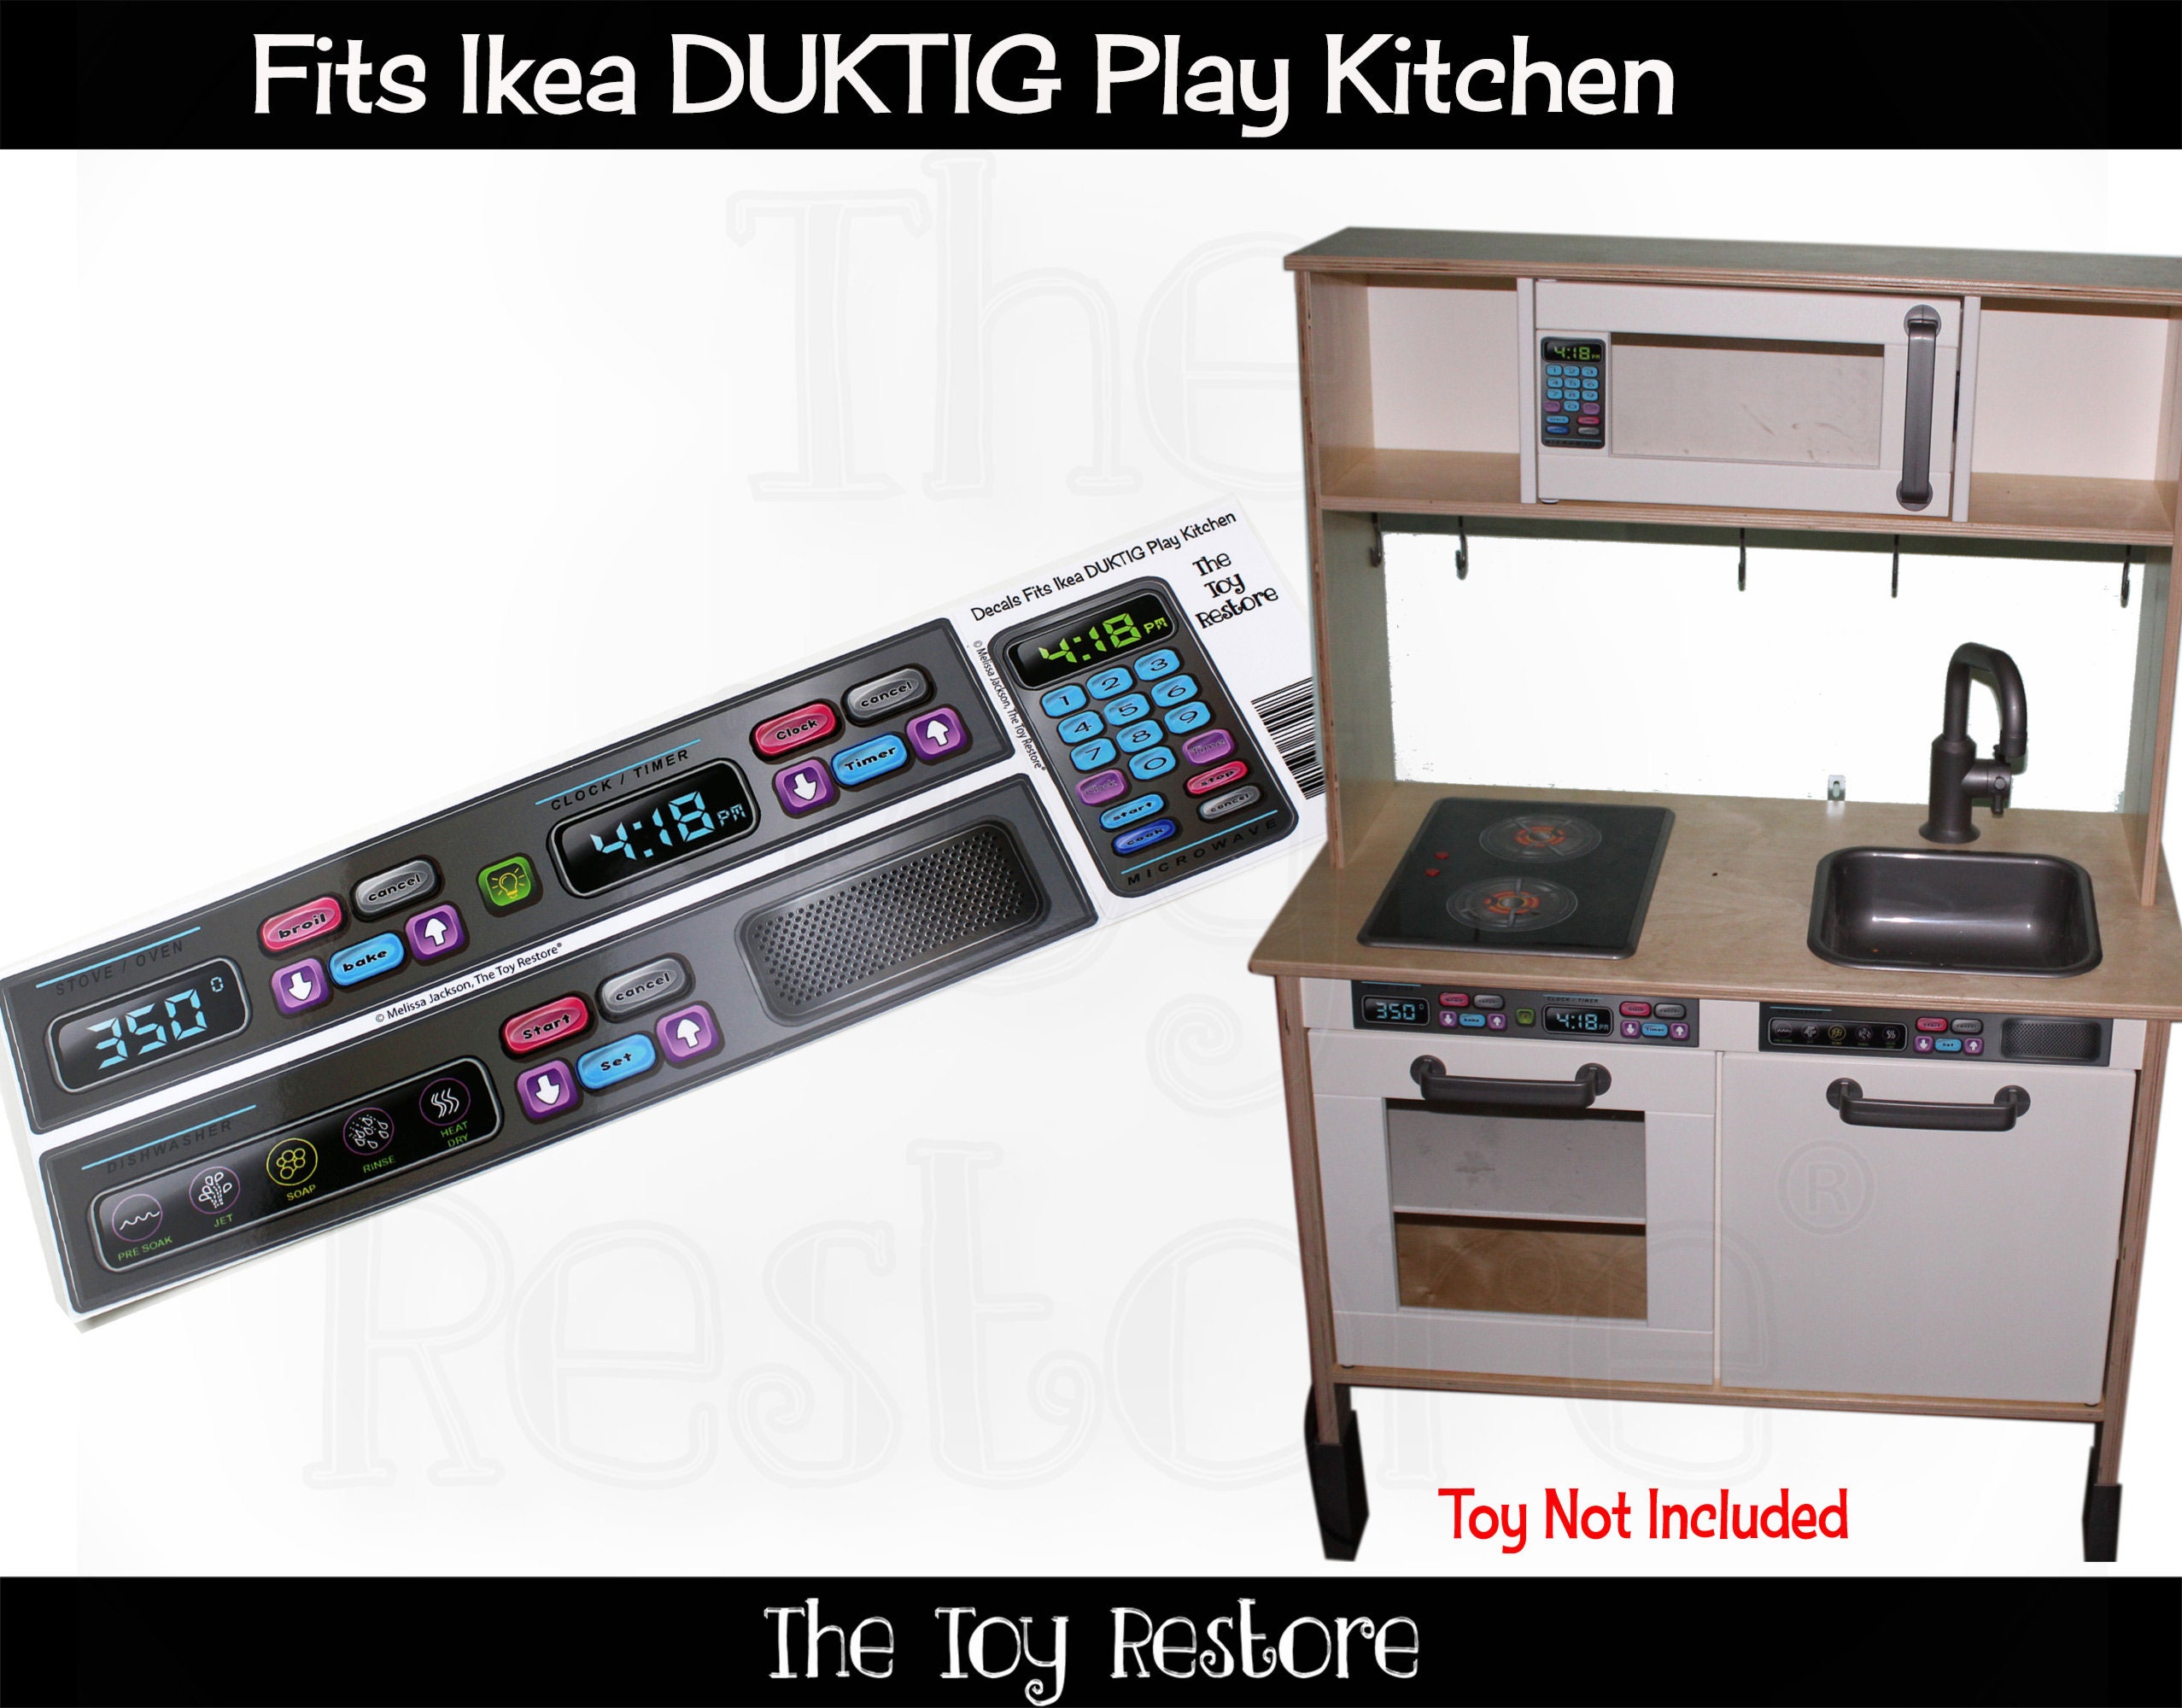 Calcomanía/pegatina de botones de horno para IKEA Duktig play kitchen  STICKER muebles y decoraciones NO incluidos -  México